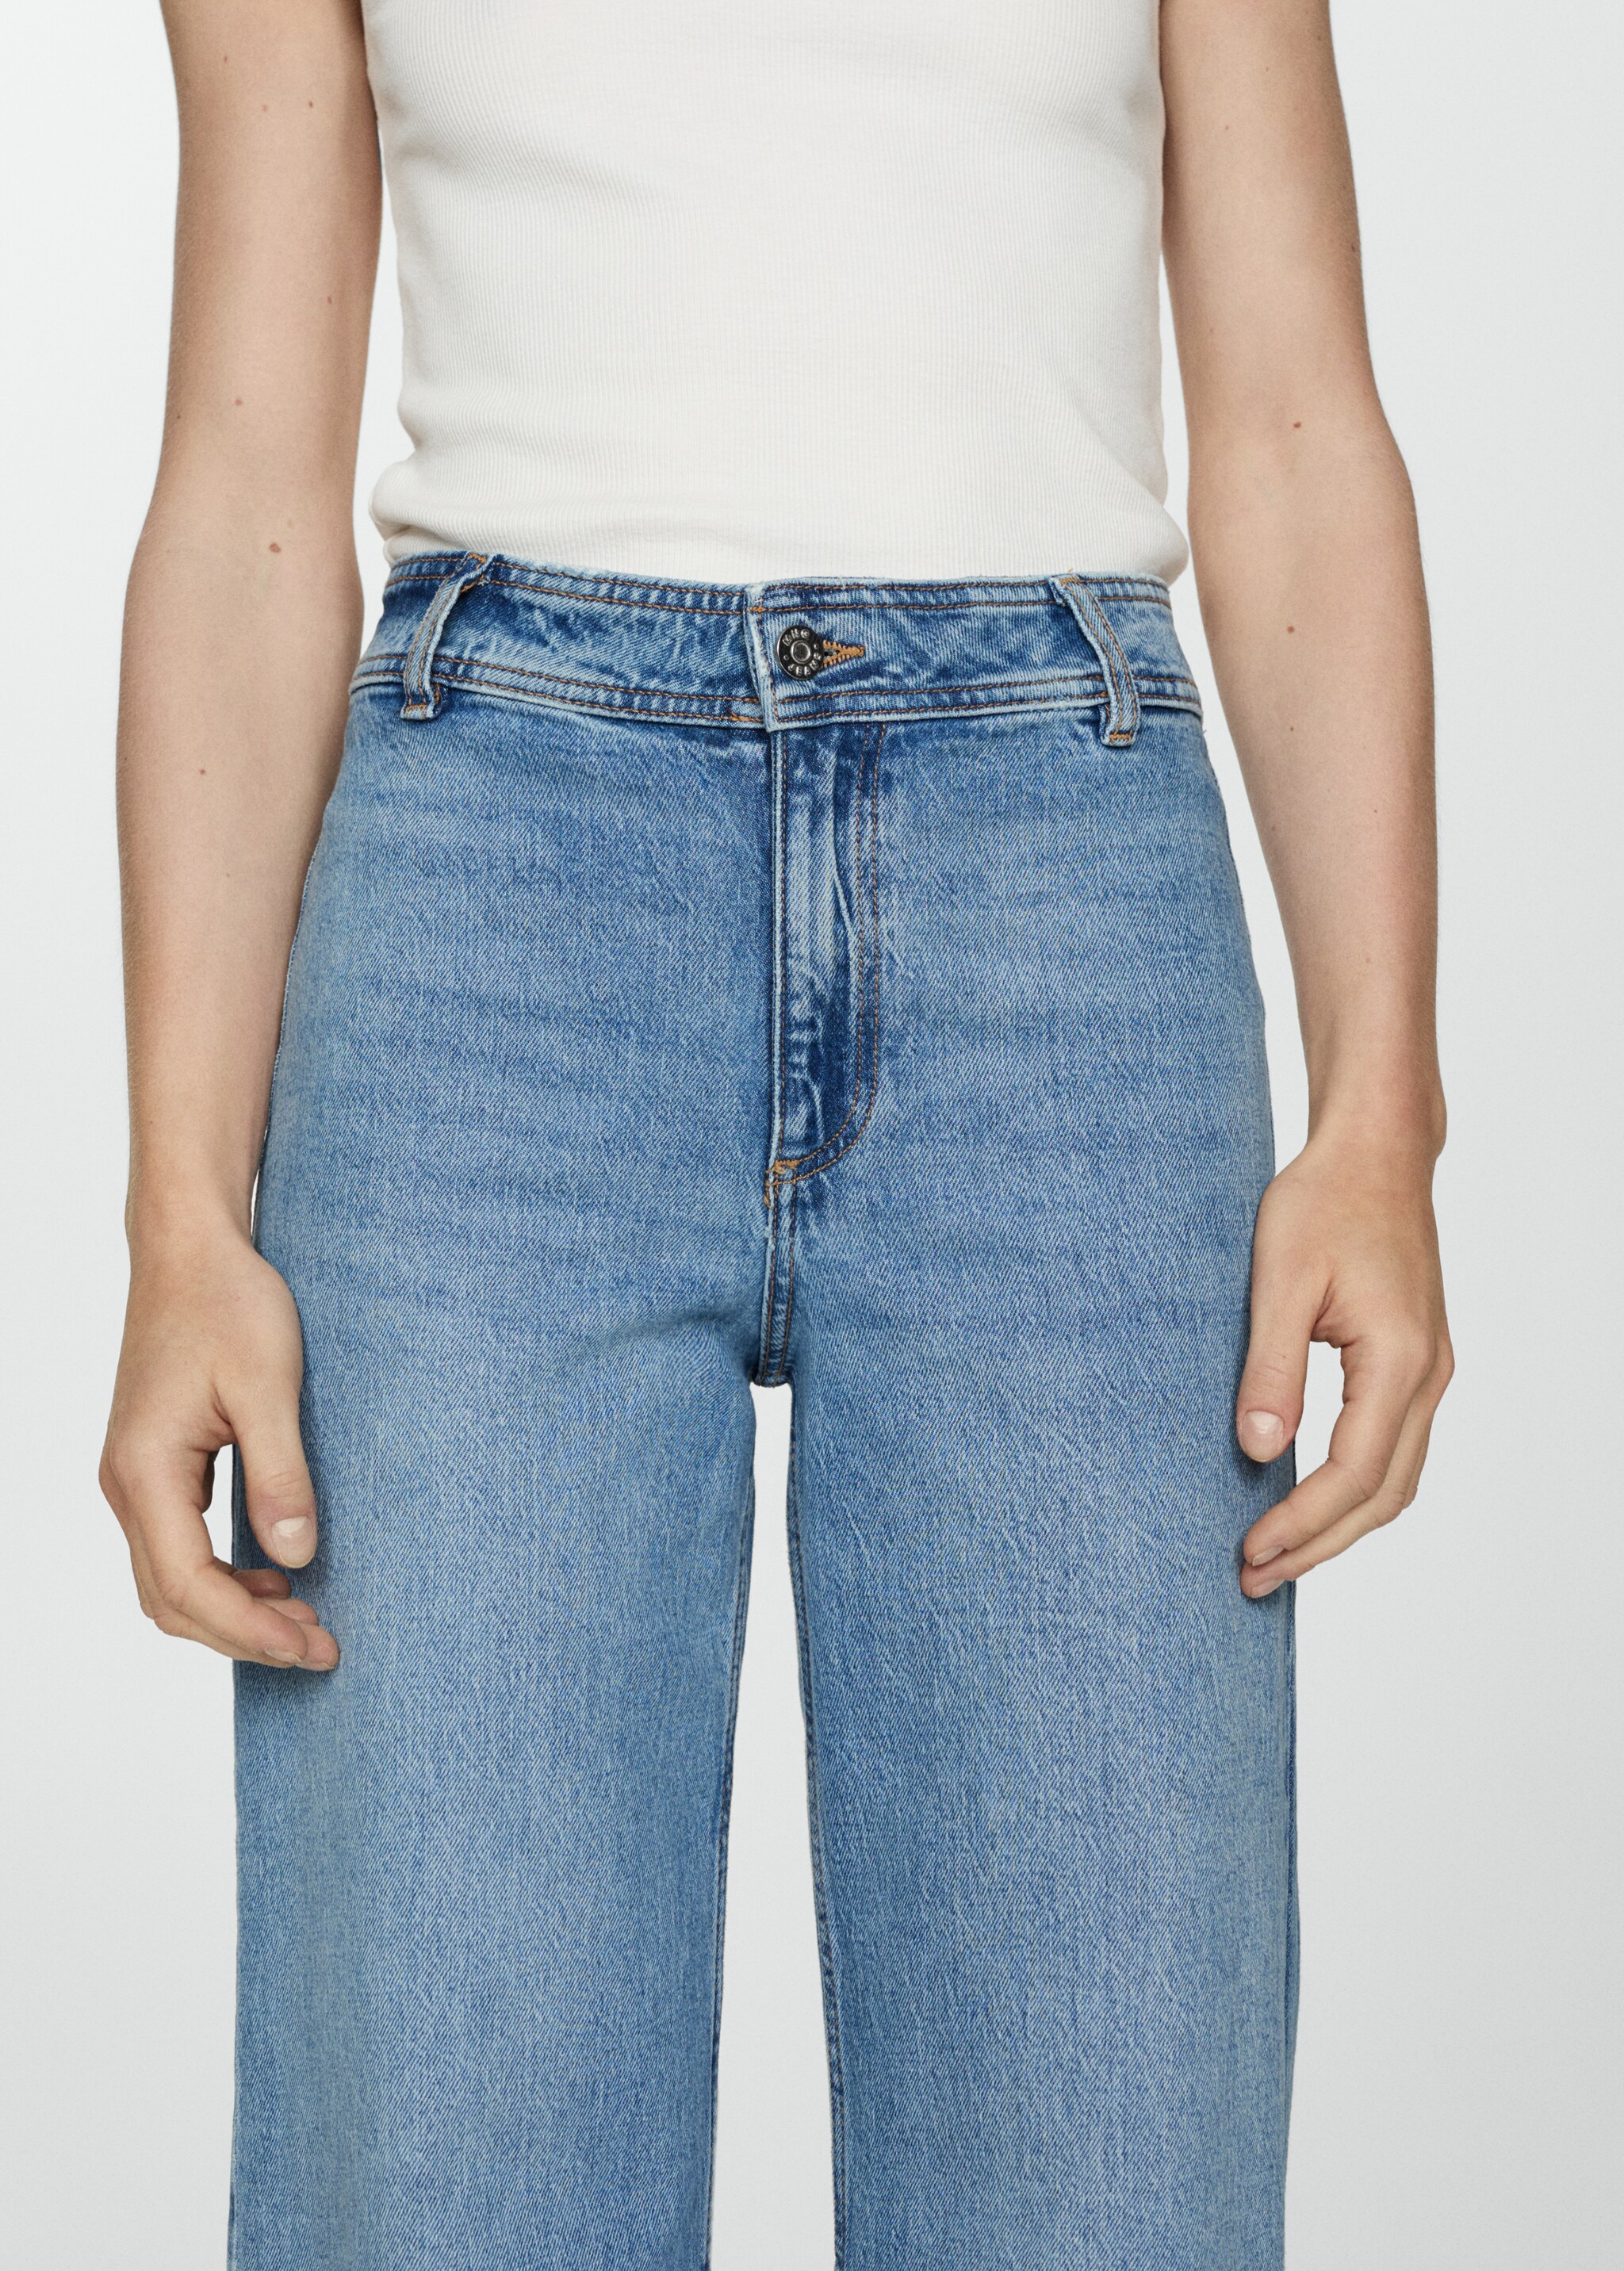 Jeans Catherin culotte tiro alto - Detalle del artículo 2